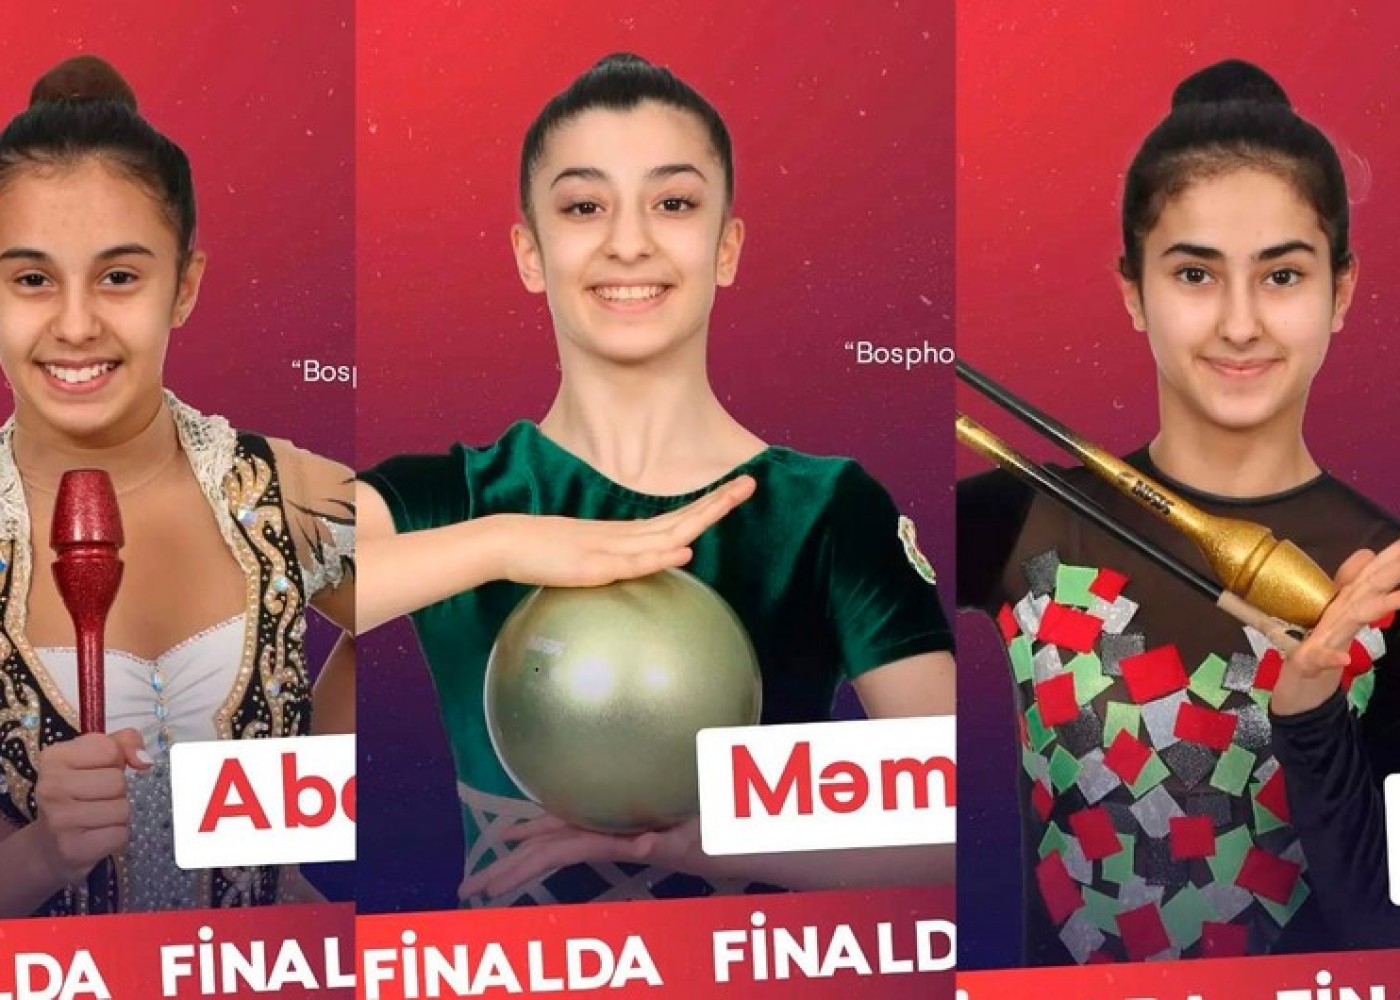 Azərbaycan gimnastları finala vəsiqəQAZANDILAR